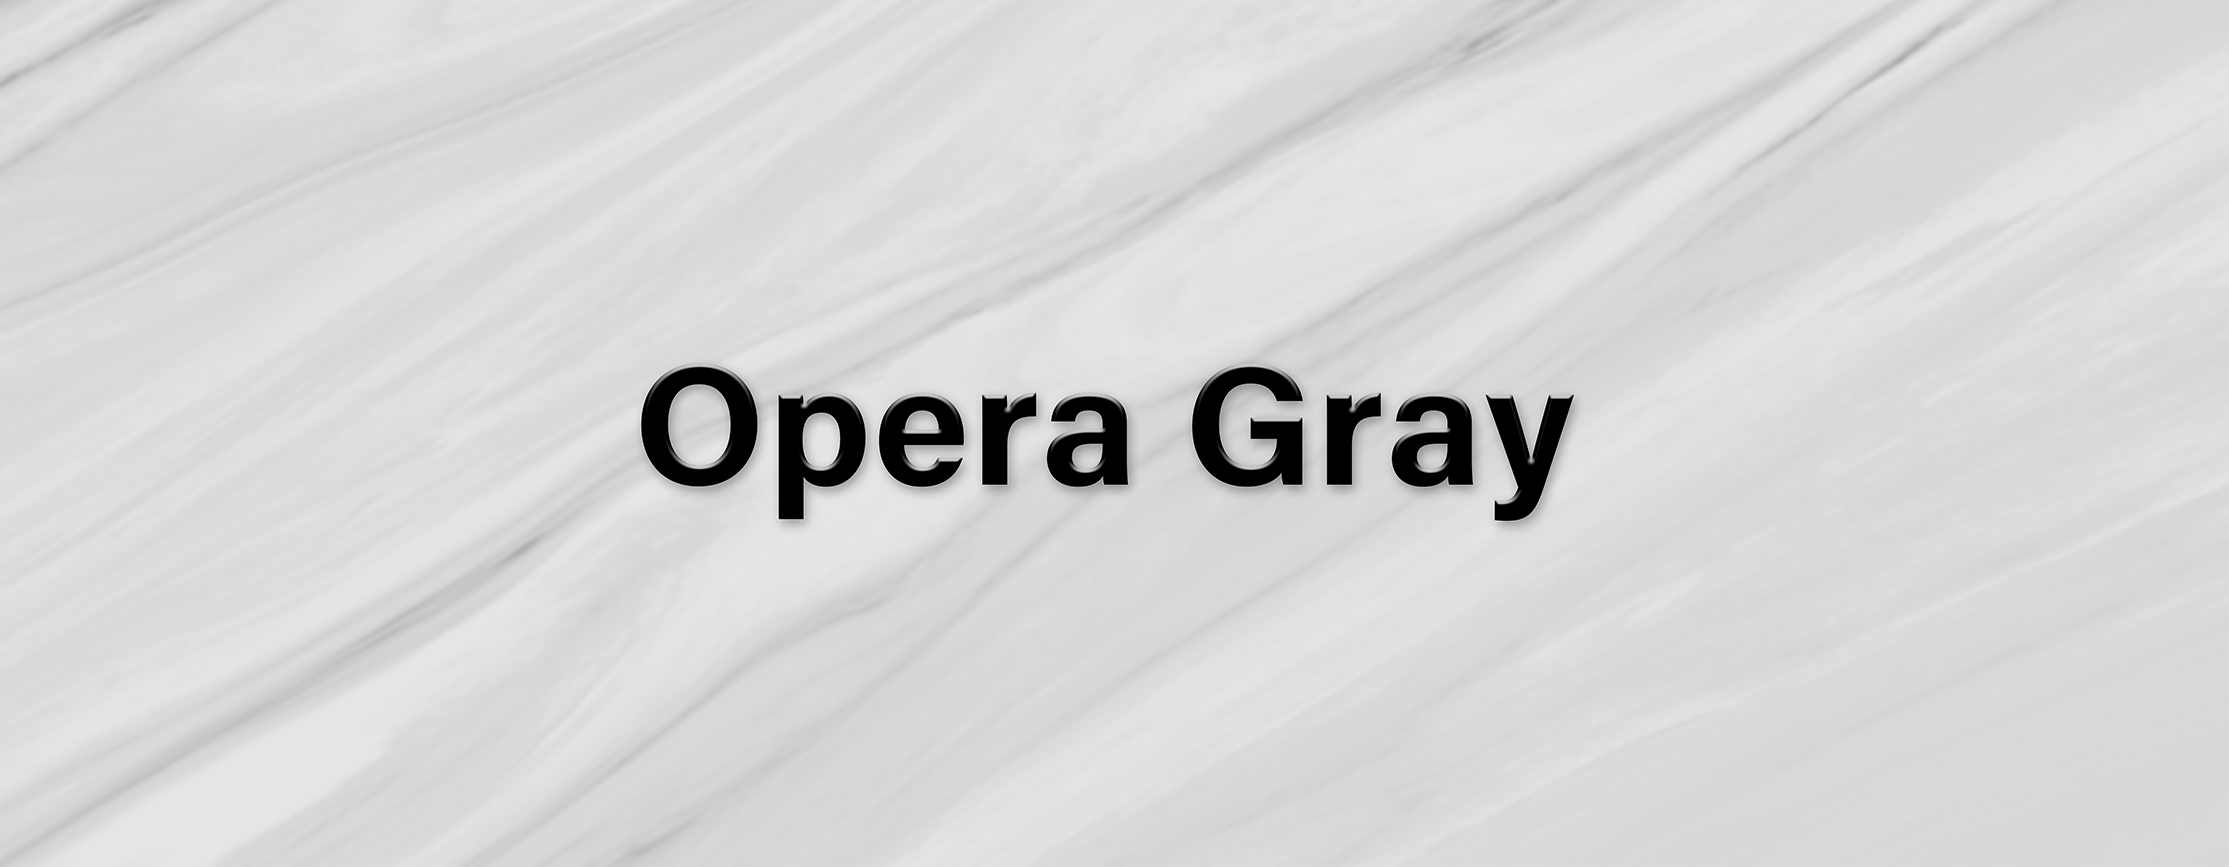 کاشی Opera gray